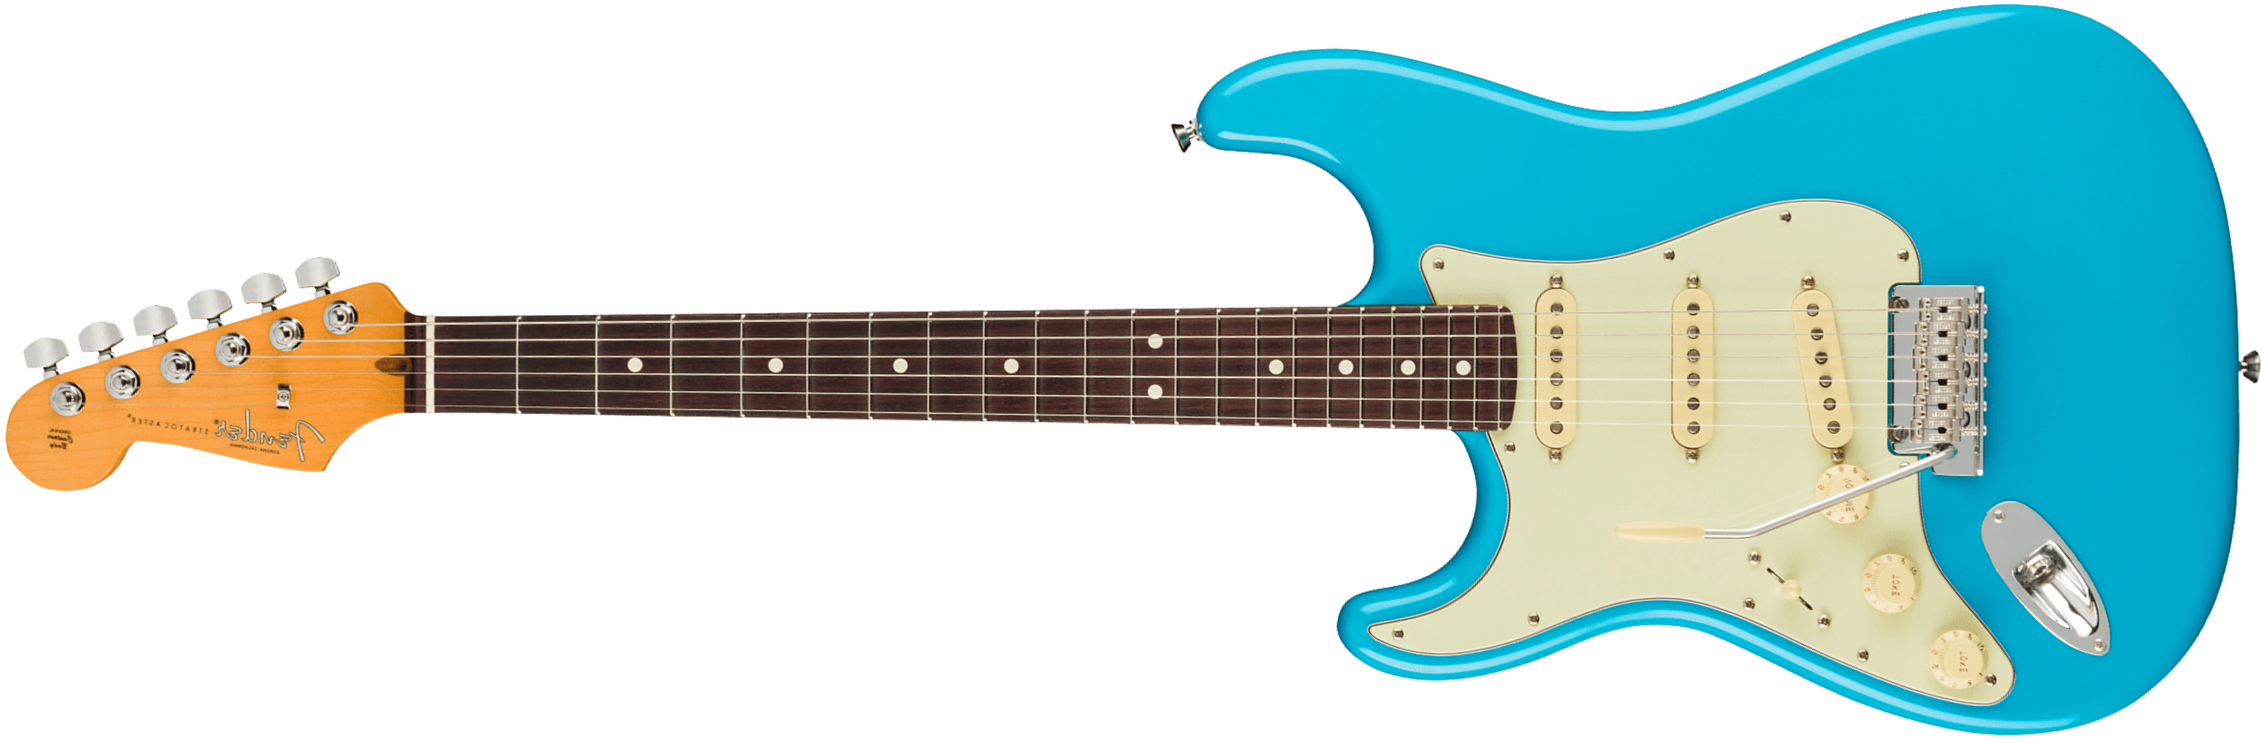 Fender Strat American Professional Ii Lh Gaucher Usa Rw - Miami Blue - Linkshandige elektrische gitaar - Main picture